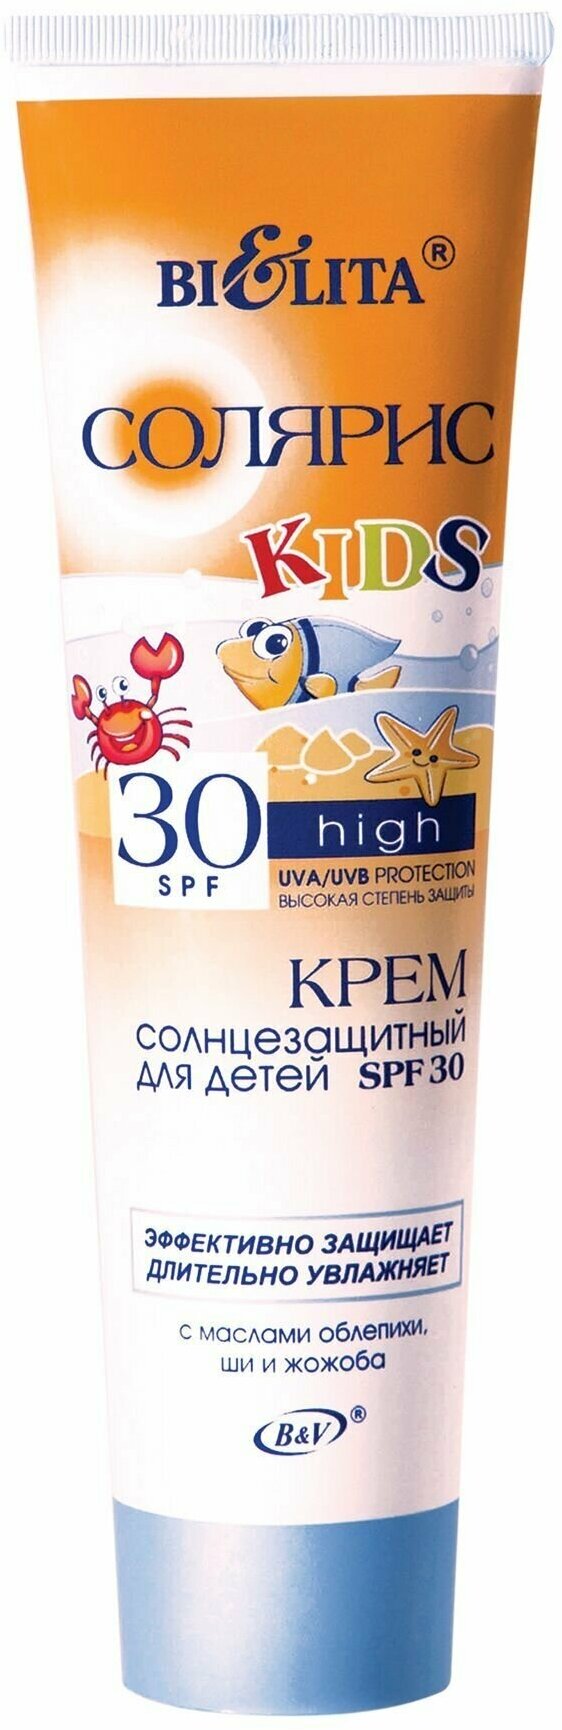 Крем для детей SPF 30 солнцезащитный, 100мл